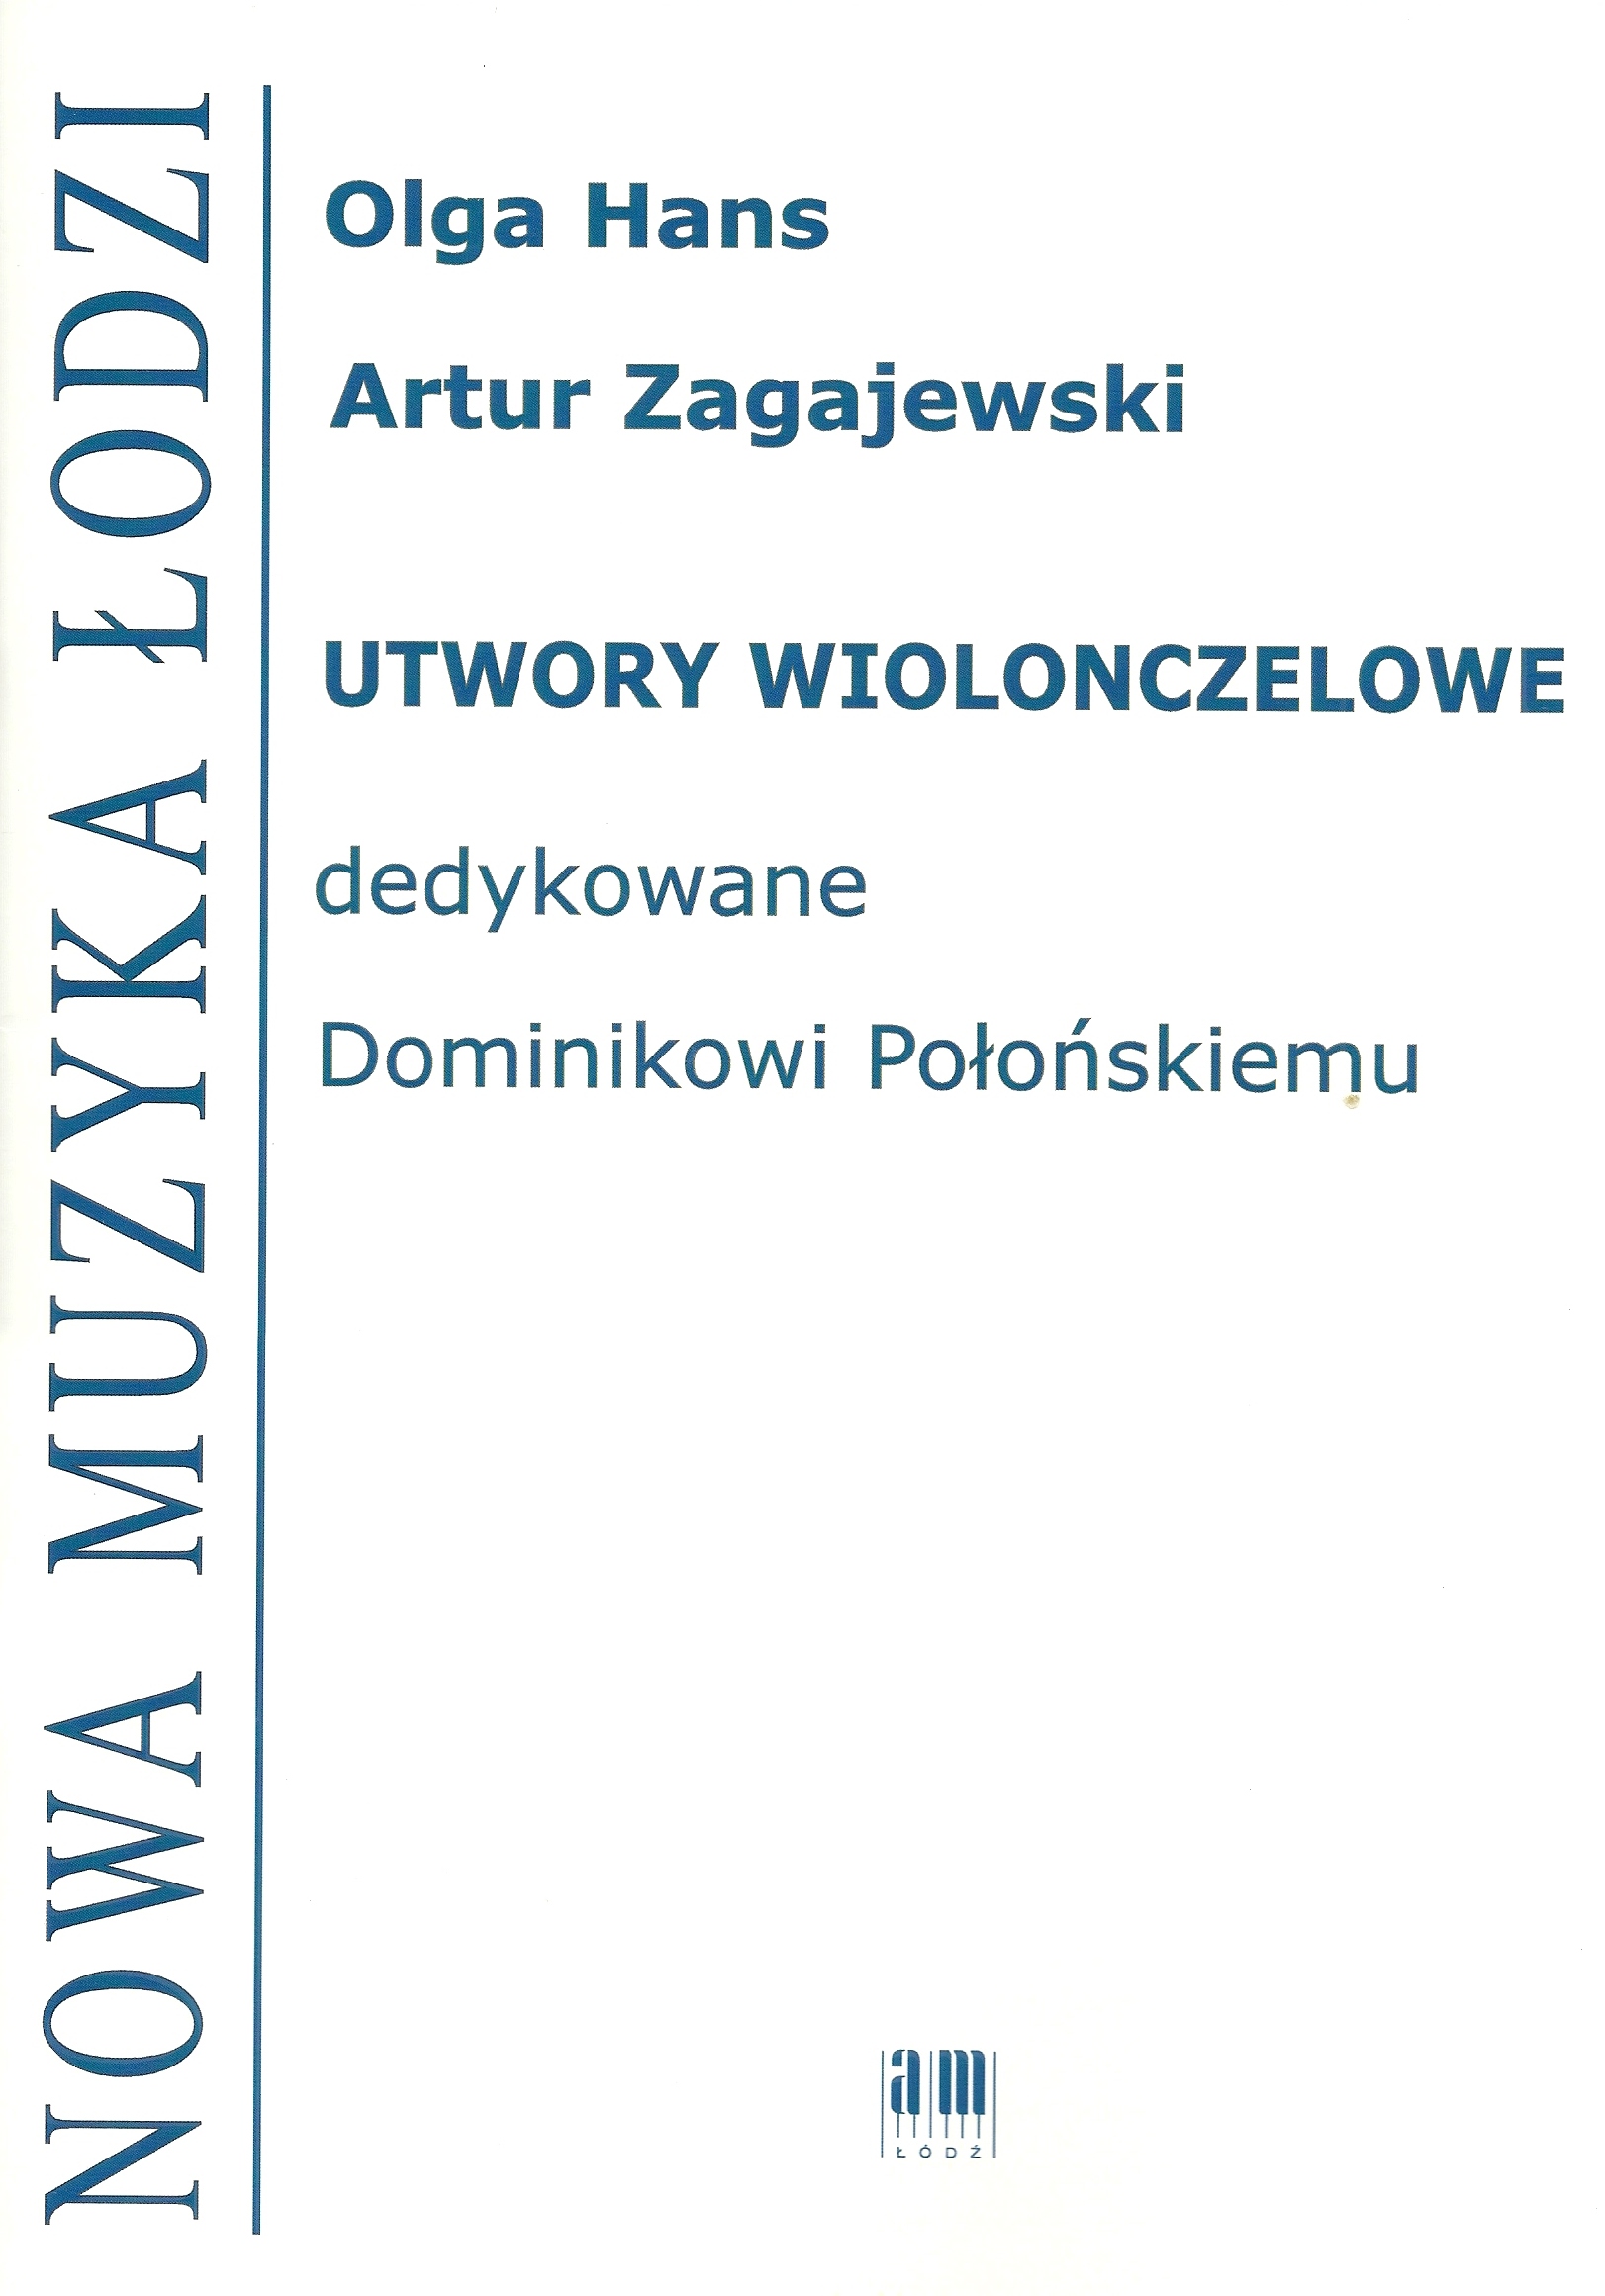 Utwory wiolonczelowe dedykowane Dominikowi Połońskiemu